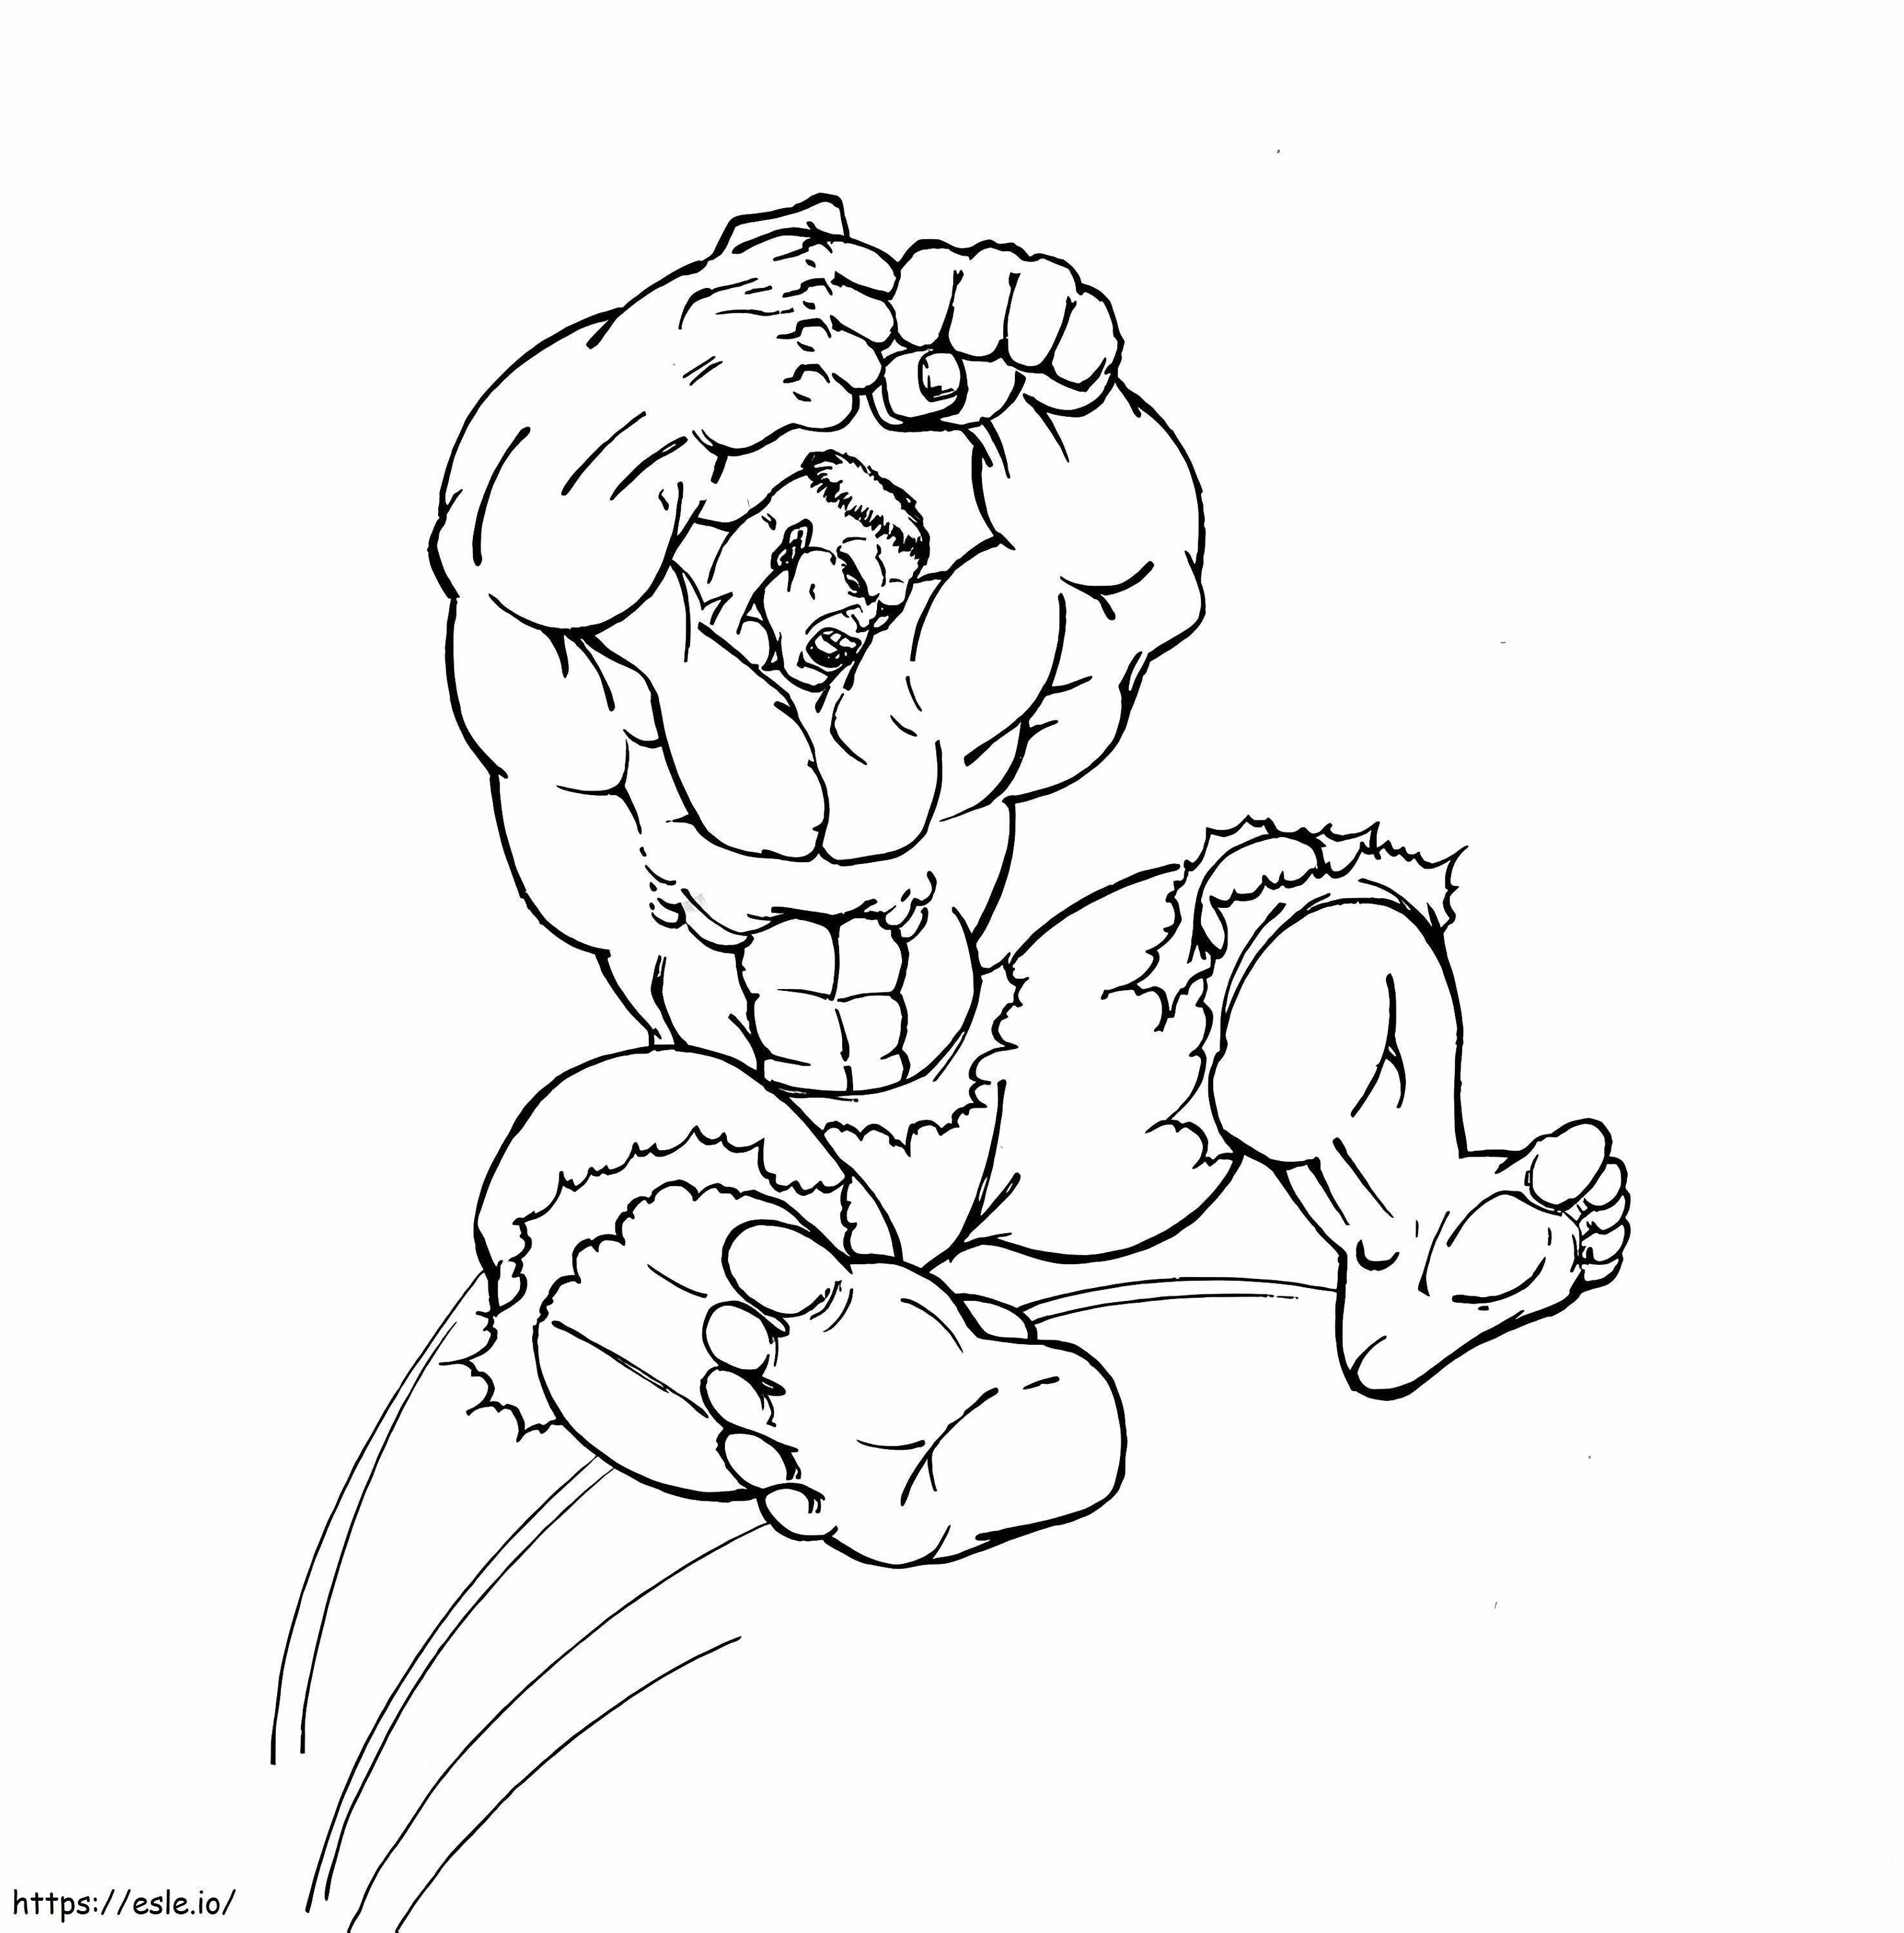 1562292168_Hulk Jumping A4 coloring page